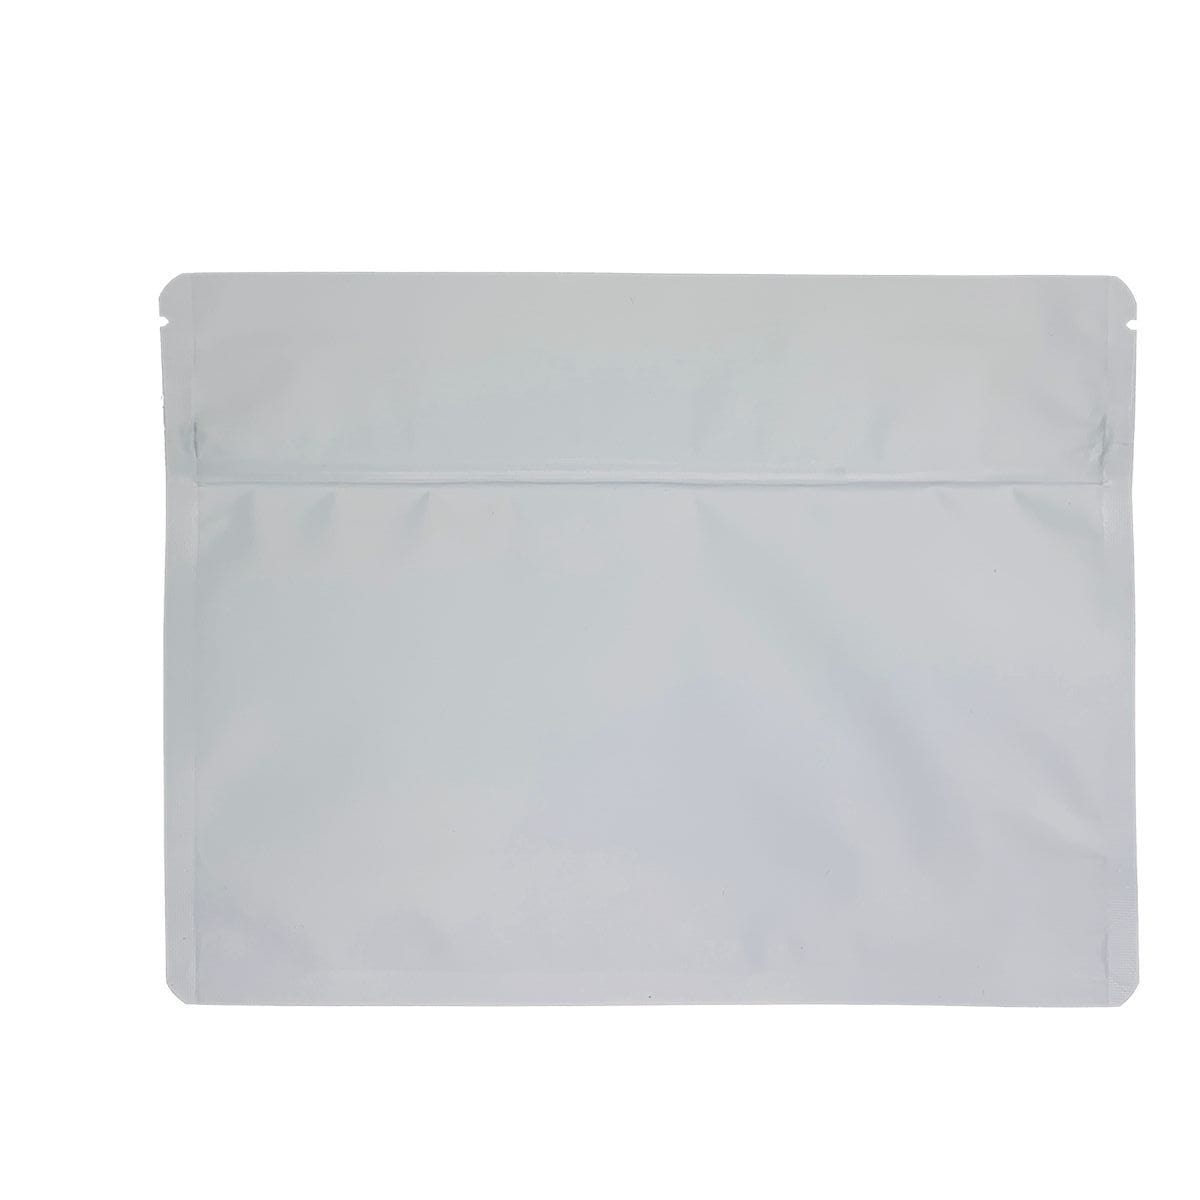 Bag King Large Child-Resistant Opaque Exit Bag (1/2 lb) 9.0" x 12.0" Matte White